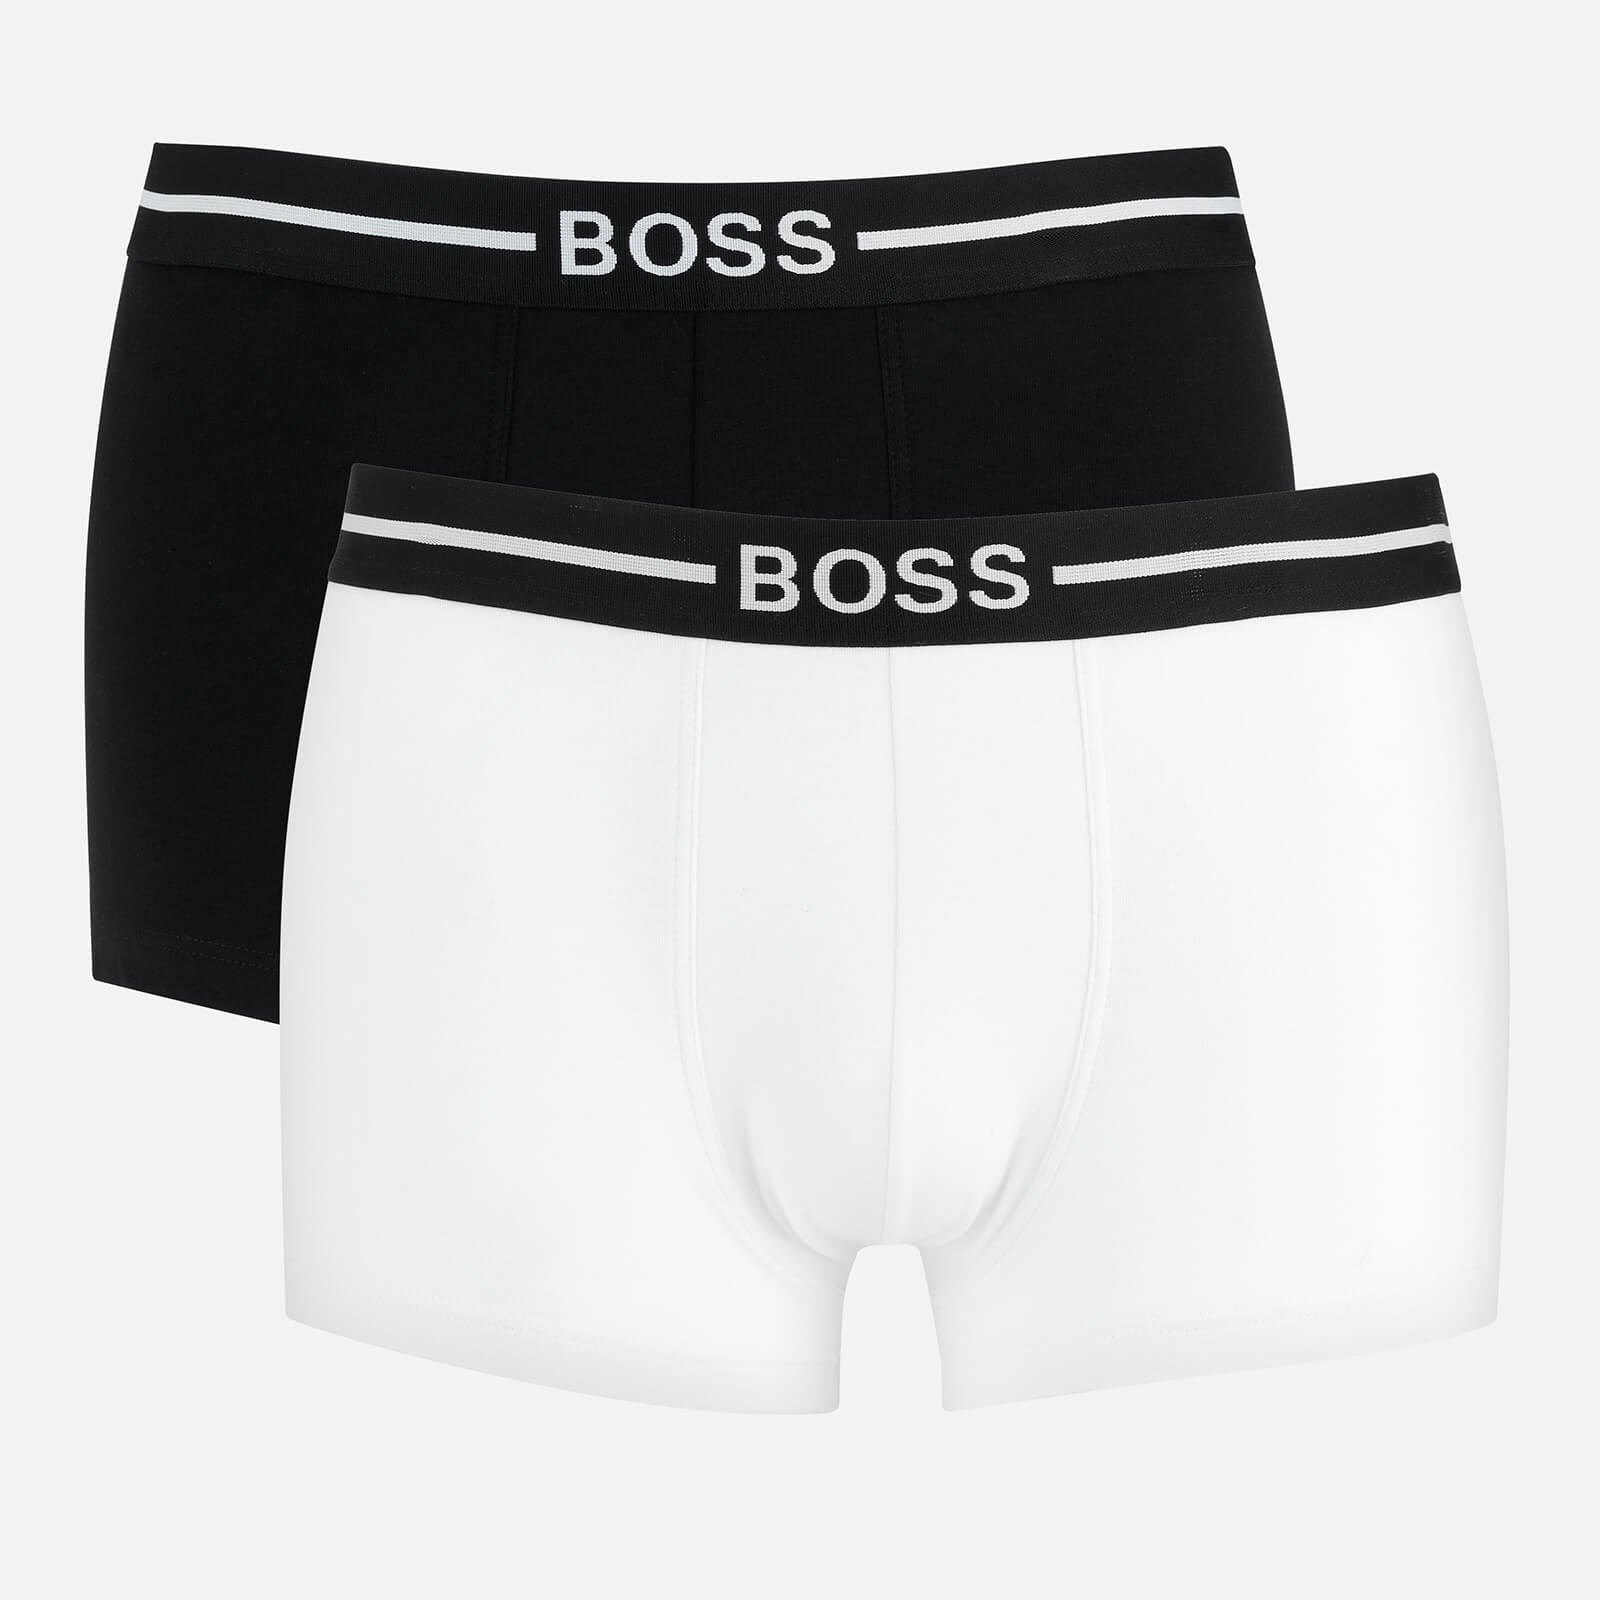 BOSS Bodywear Men's Organic Cotton 3-Pack Trunks - Black - S